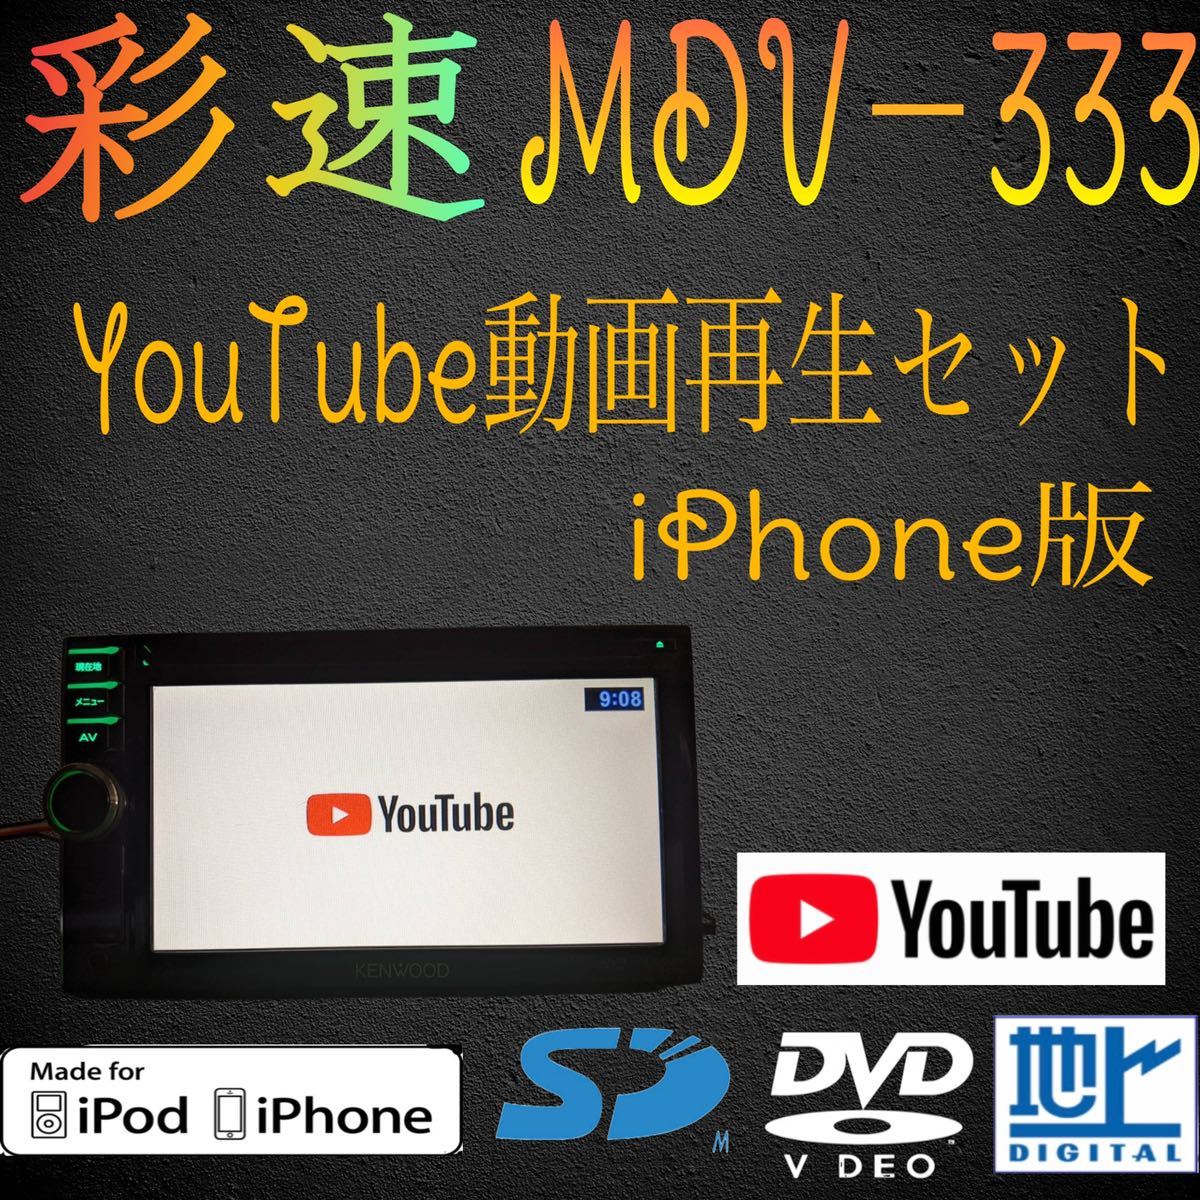 ケンウッド 彩速ナビ MDV－333 YouTubeセット | alfasaac.com